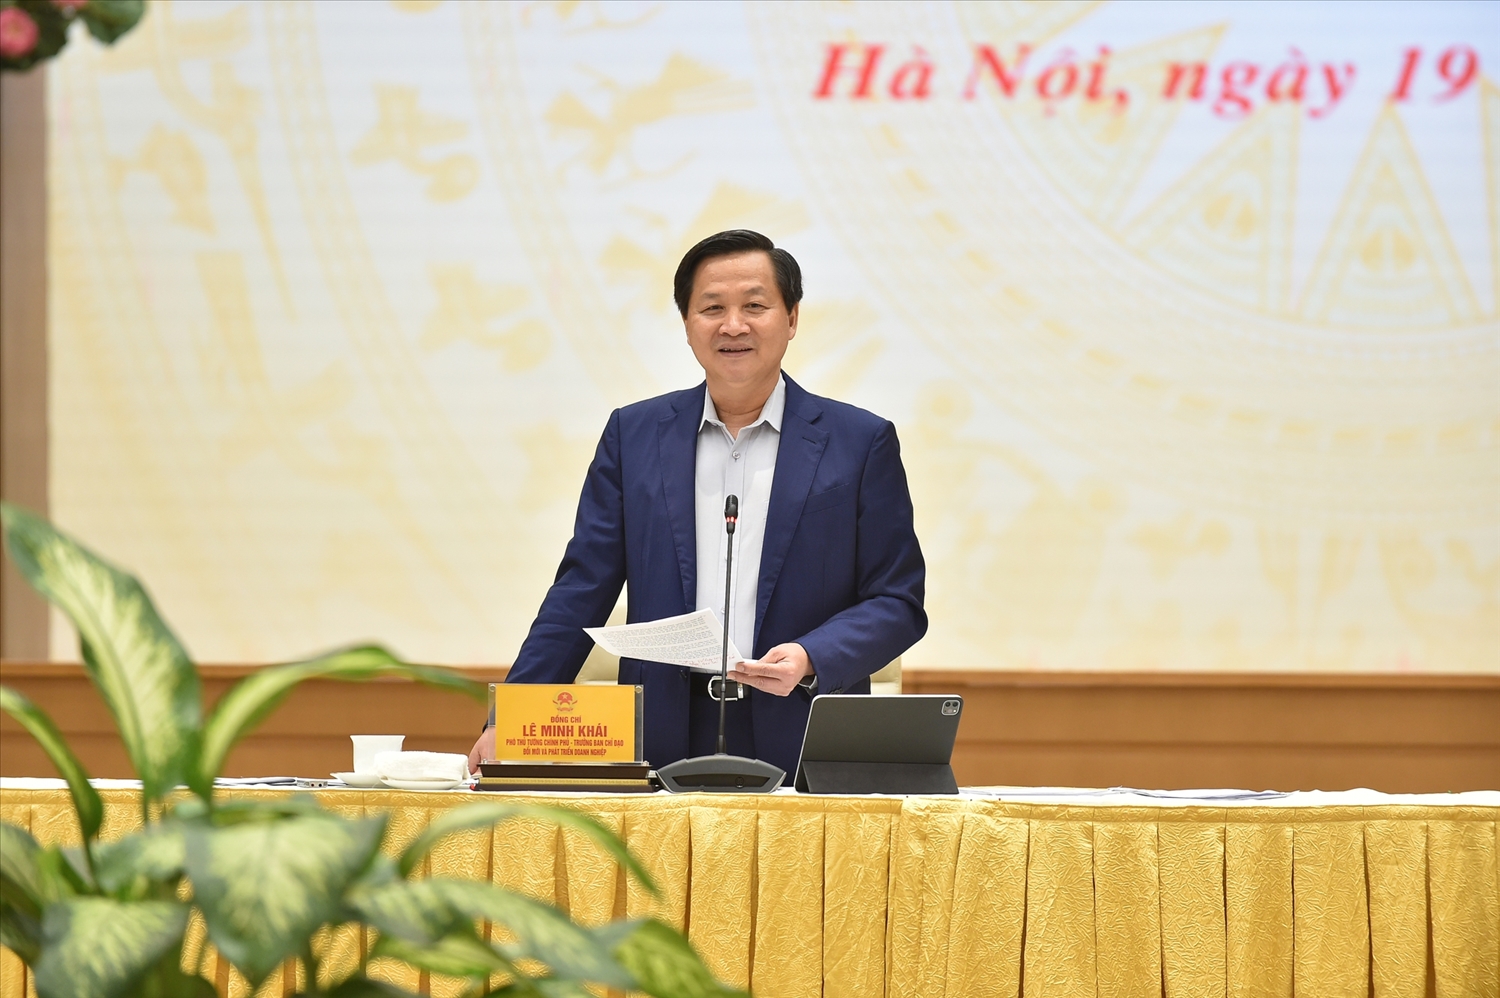 Phó Thủ tướng Lê Minh Khái: Bám sát chỉ đạo của Đảng, Quốc hội, Chính phủ, quyết liệt thực hiện nhiệm vụ được giao. Ảnh VGP/Quang Thương